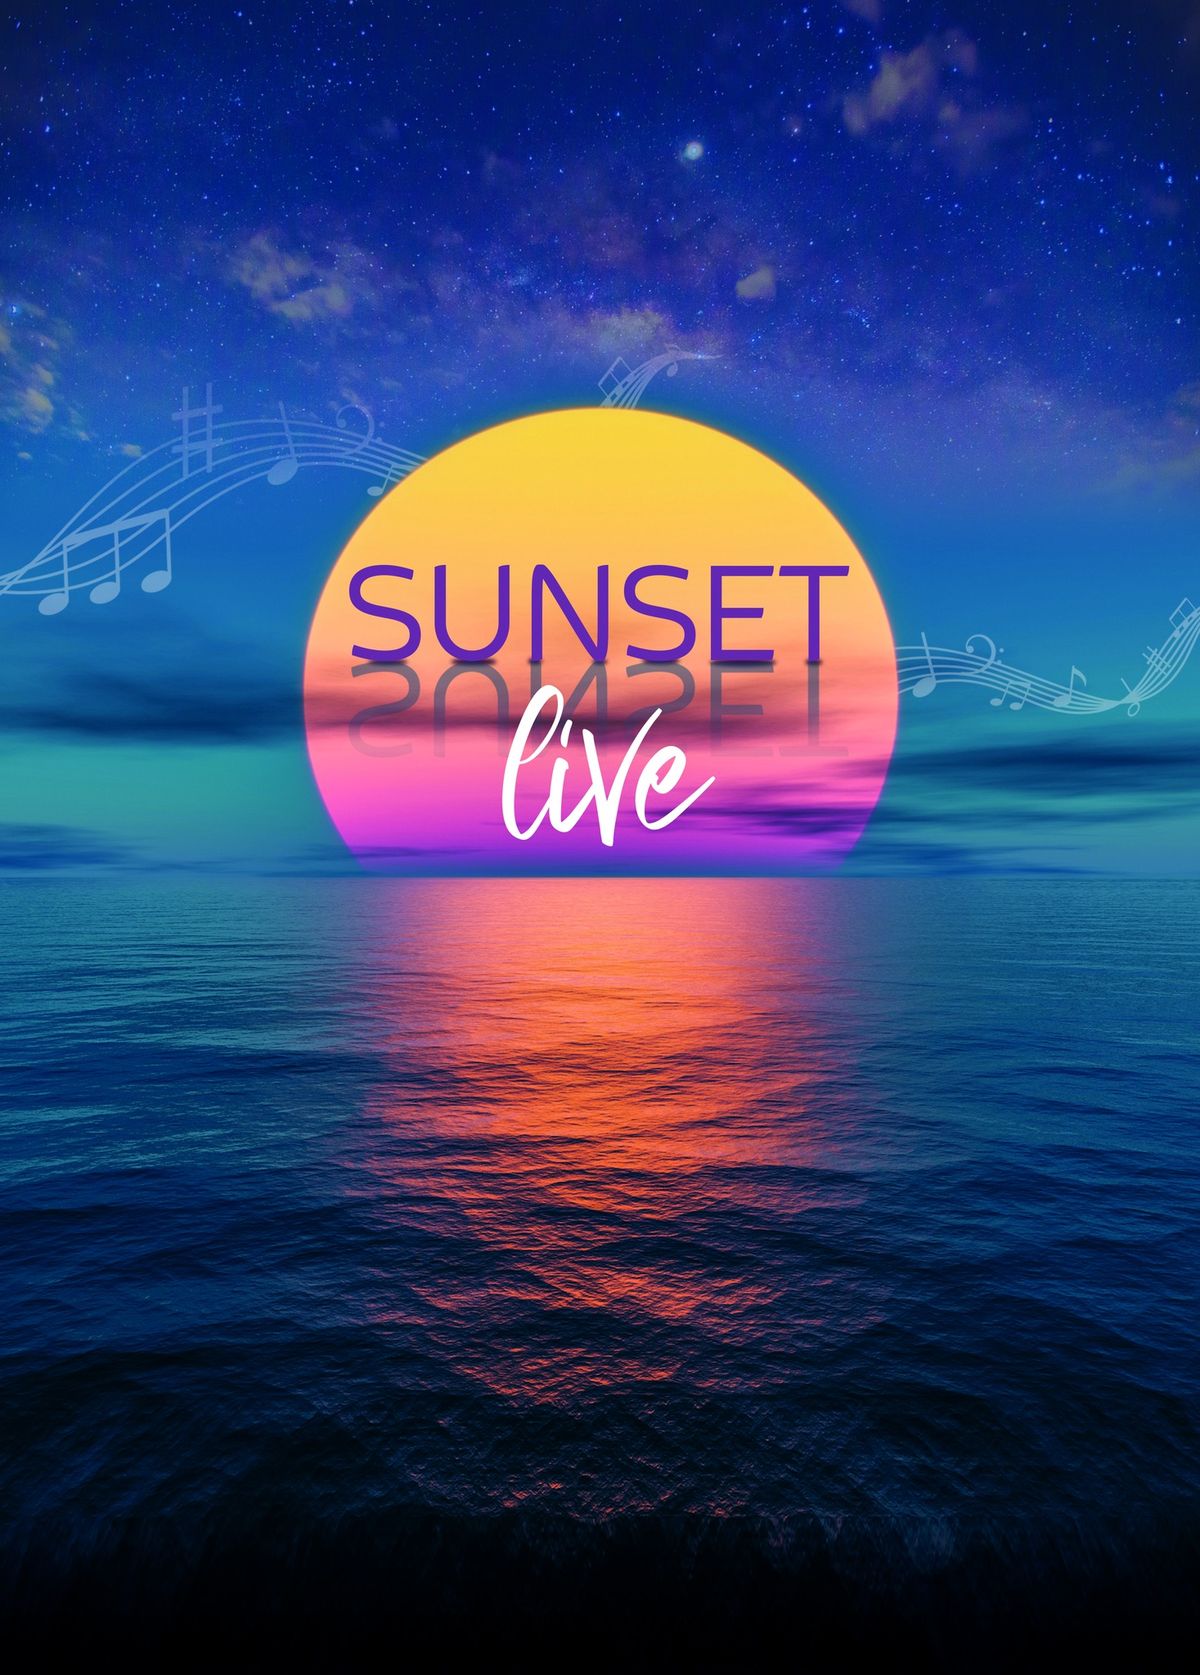 Sunset Live \ud83c\udf05